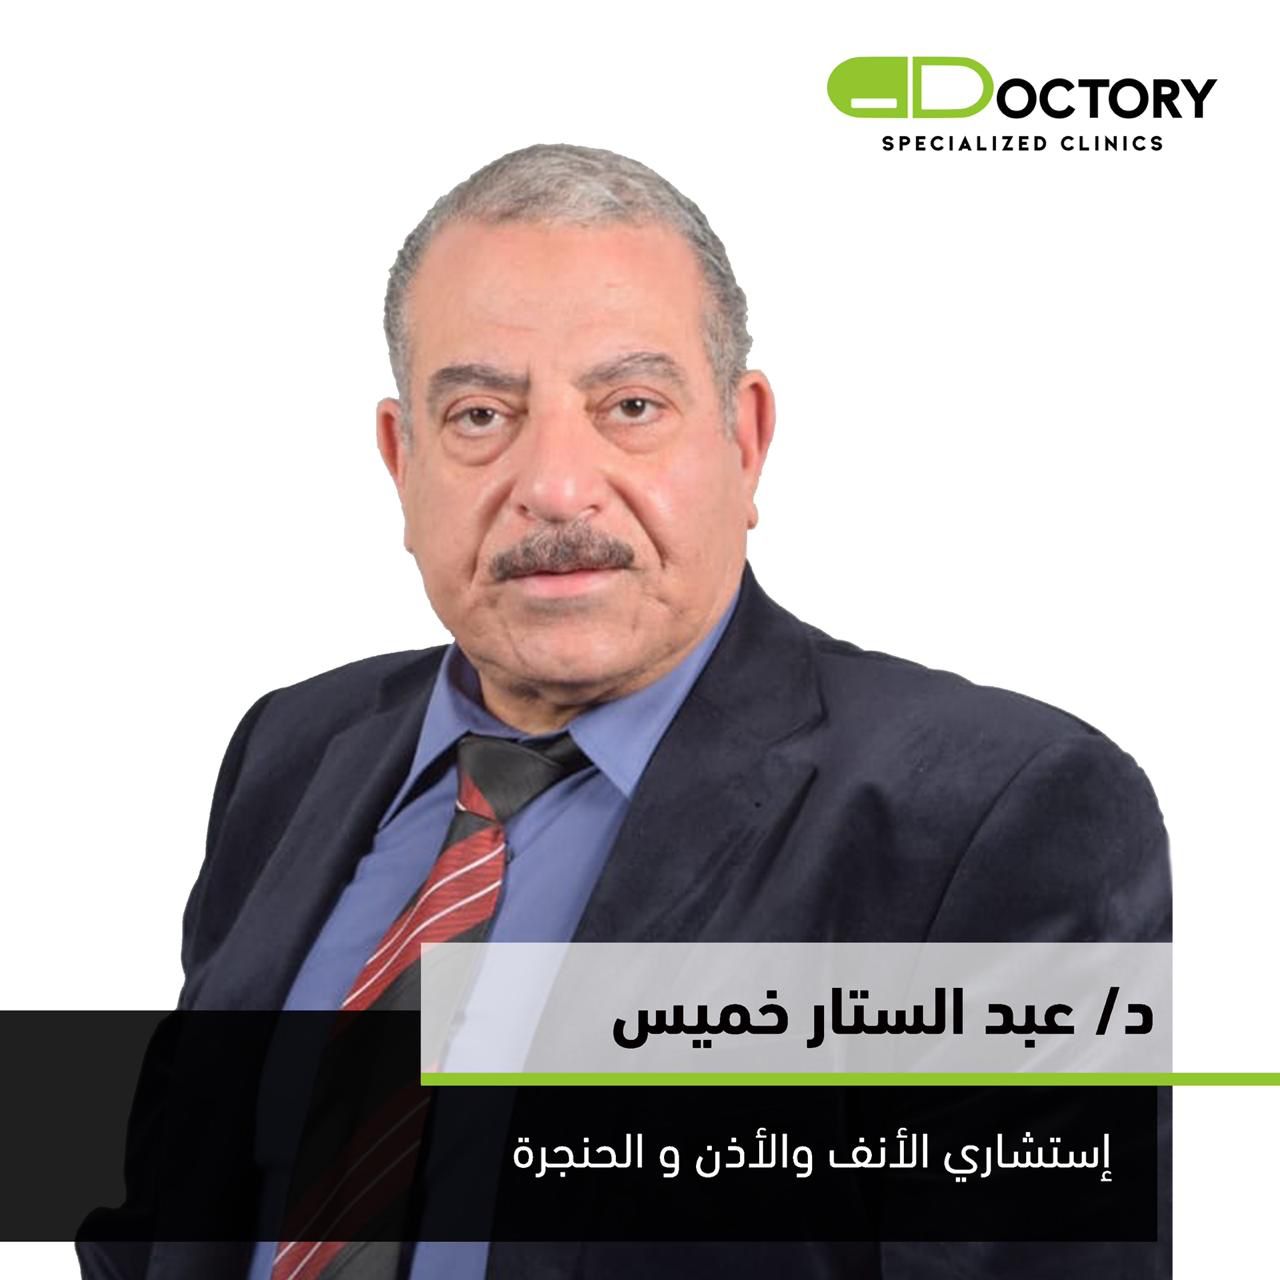 دكتور عبد الستار خميس